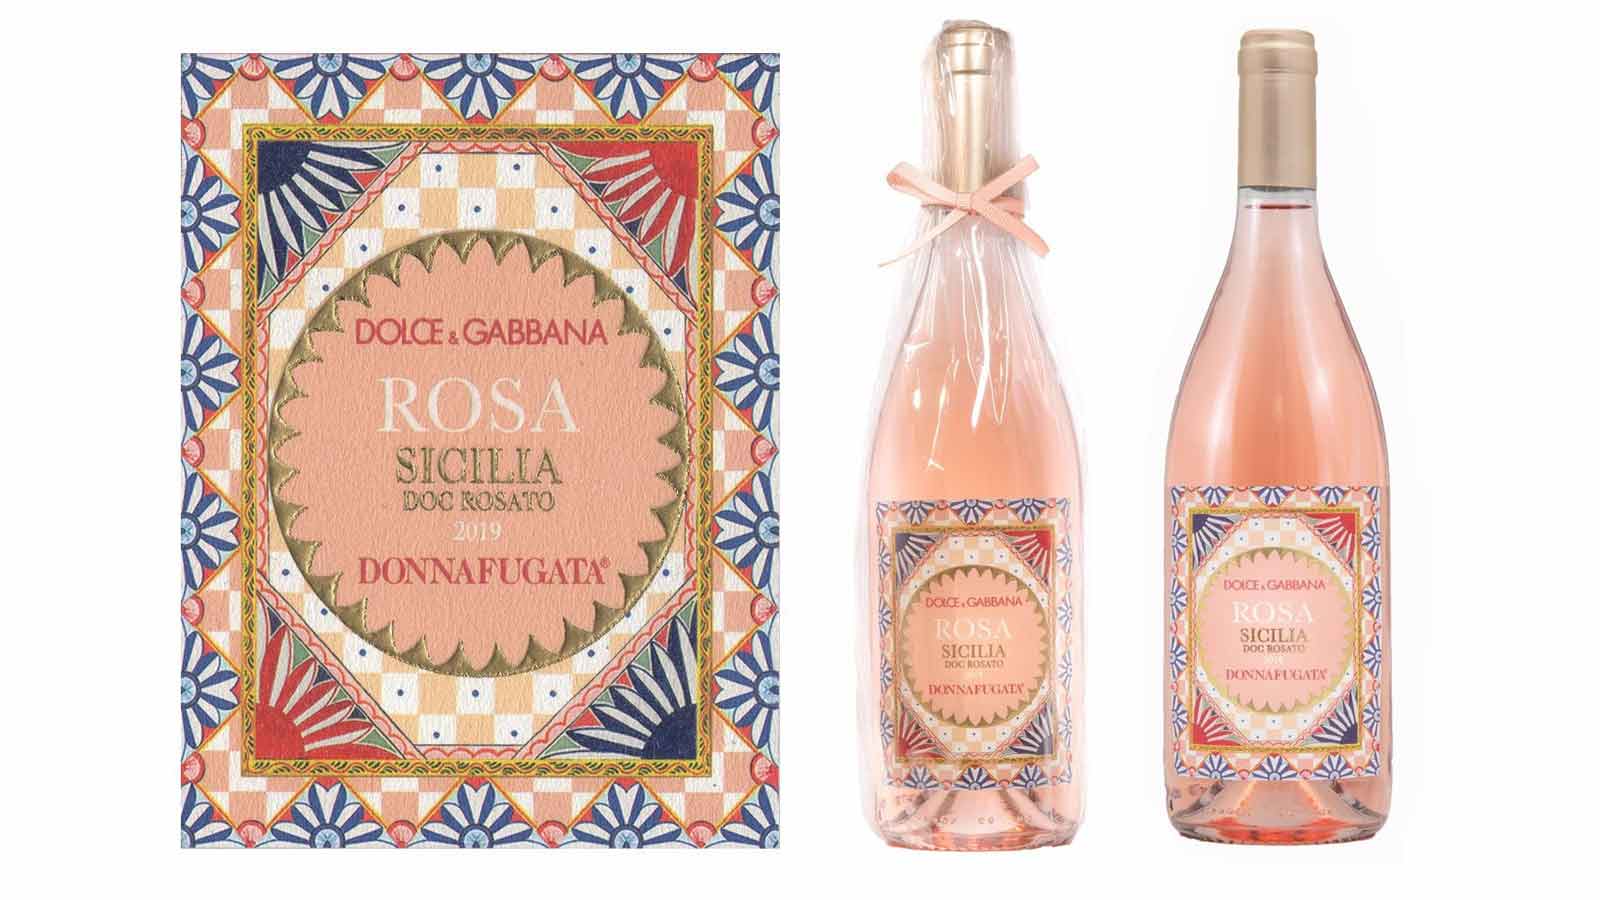 Dolce & Gabbana ra mắt dòng rượu vang Rosa hội tụ tinh hoa xứ Sicily | Robb  Report Vietnam